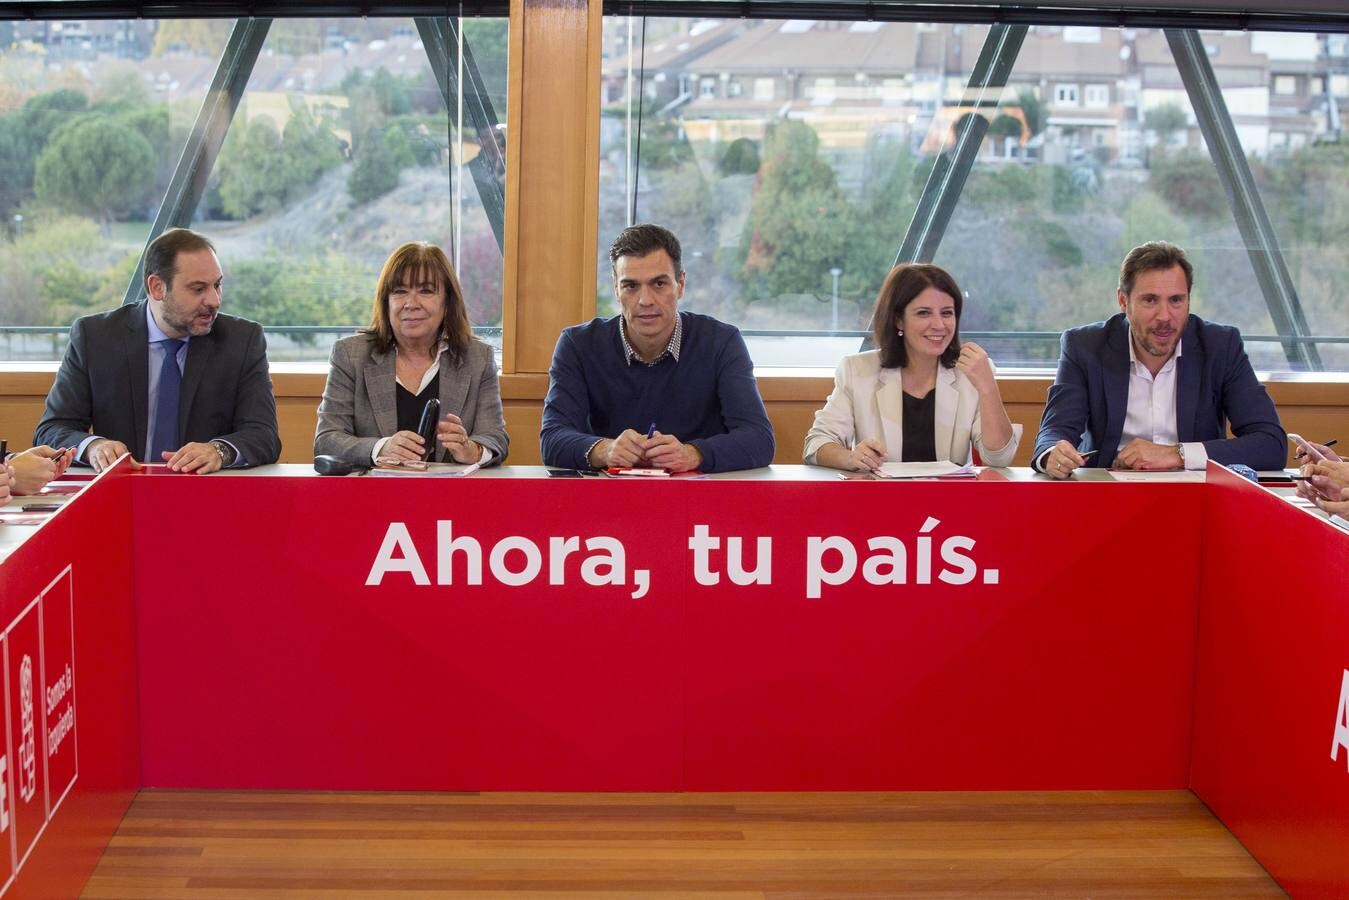 El secretario general del PSOE se reúne hoy y mañana en la capital vallisoletana con la Comisión Permanente socialista, el núcleo duro del PSOE federal